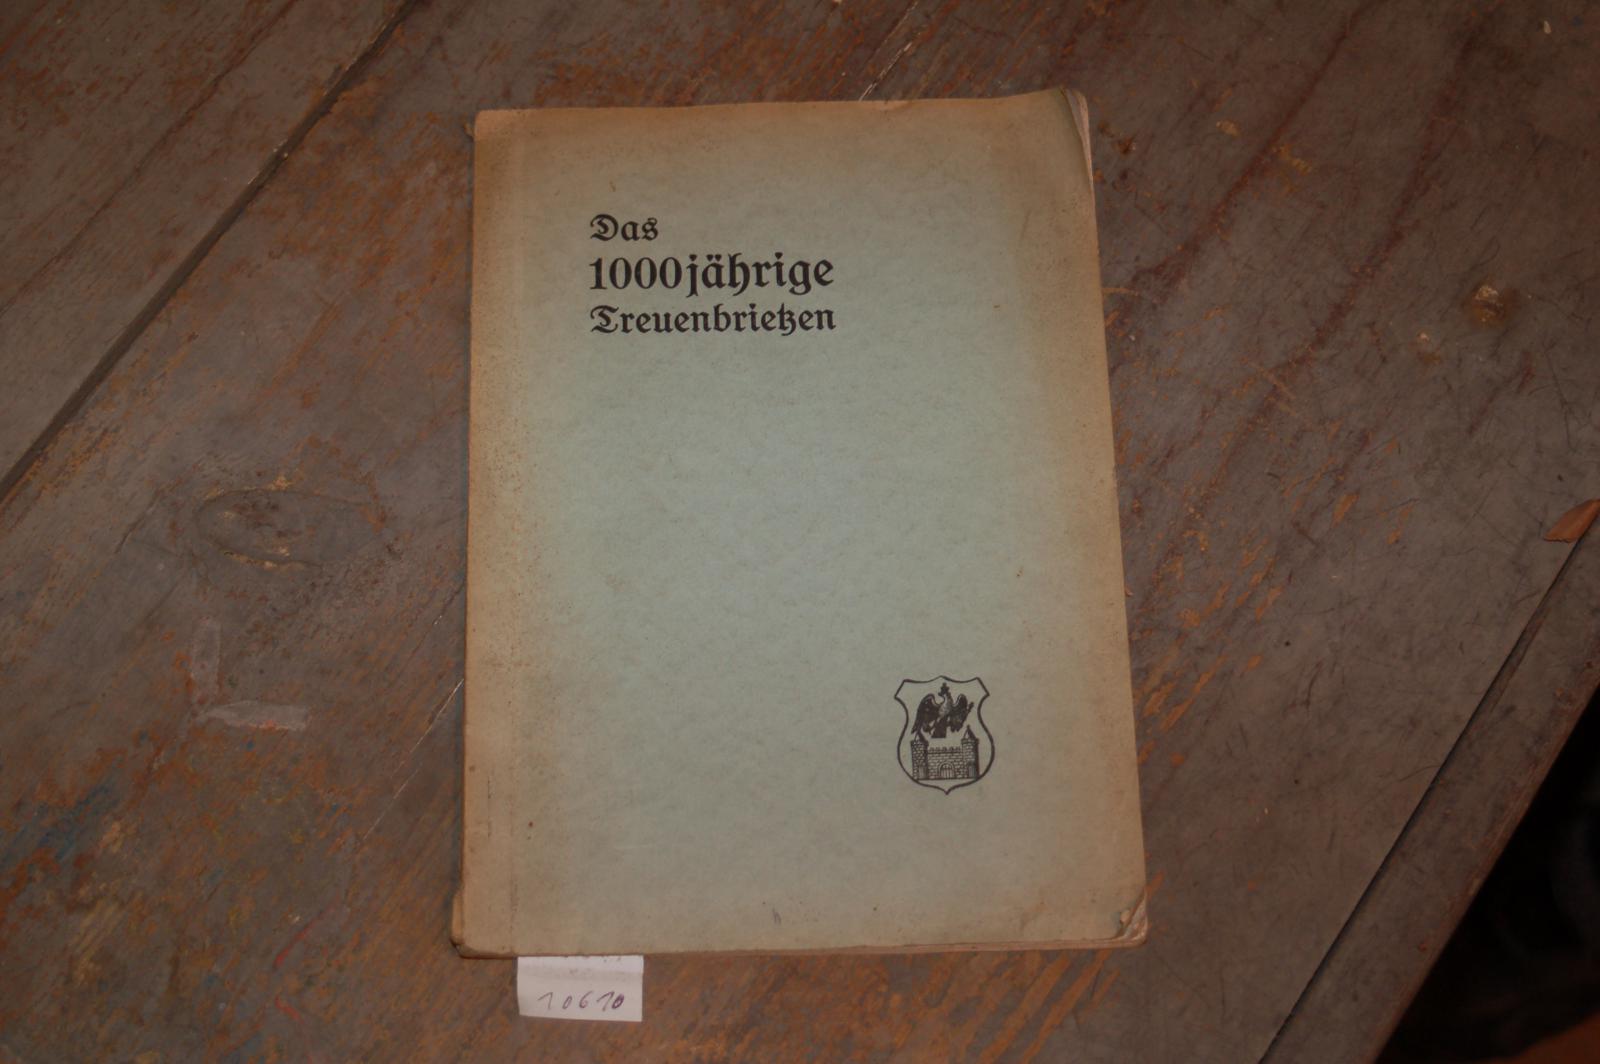 Schäfer Dr. Karlheinrich  Treuenbrietzens 1000 jährige Deutsch christliche Kultur Ein Vortrag im Jubiläumsjahr des Havellandes gehalten am 15.1.1928 